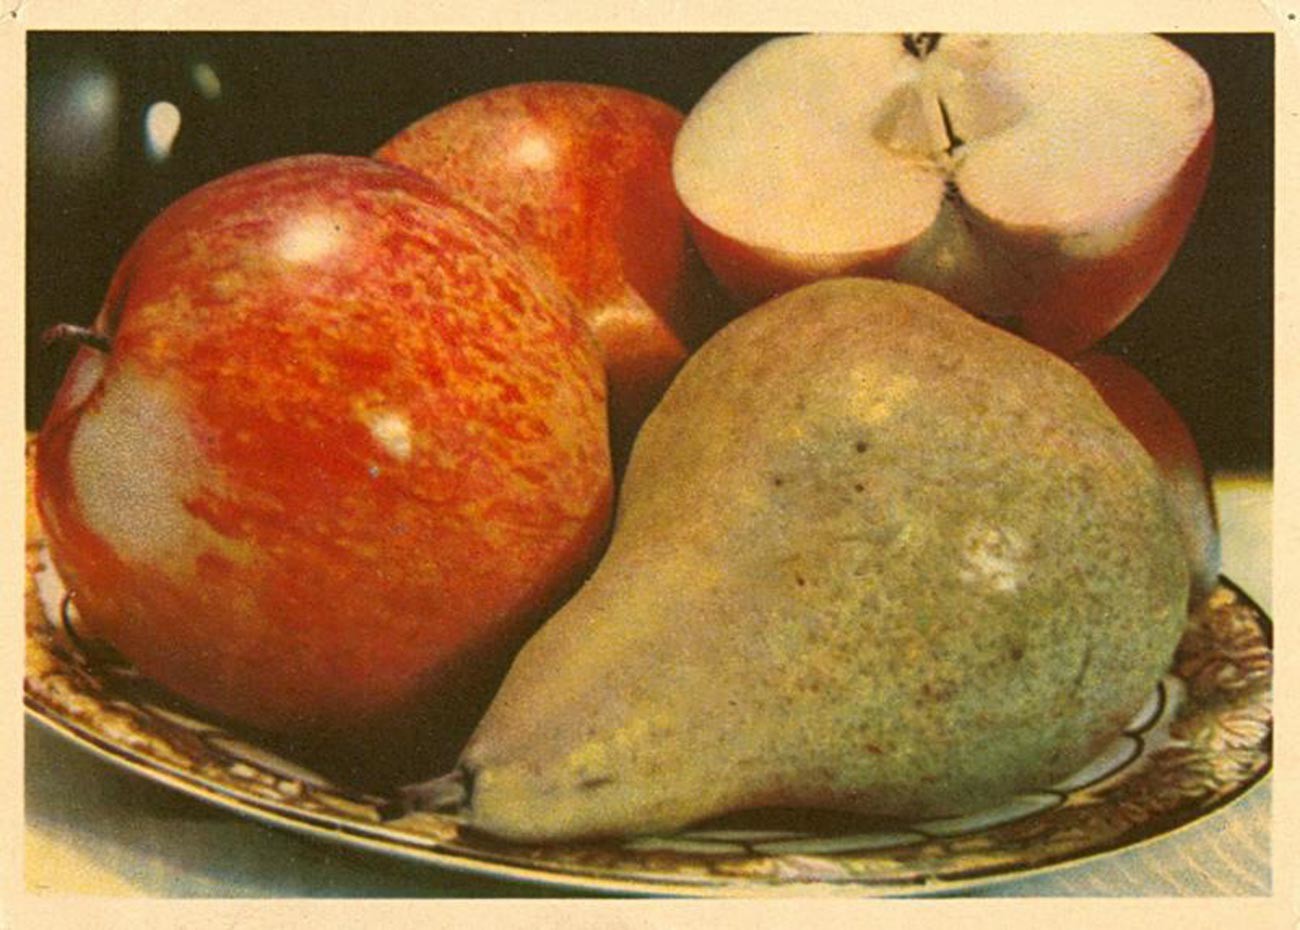 Des fruits, base d’une santé de fer (1949)
